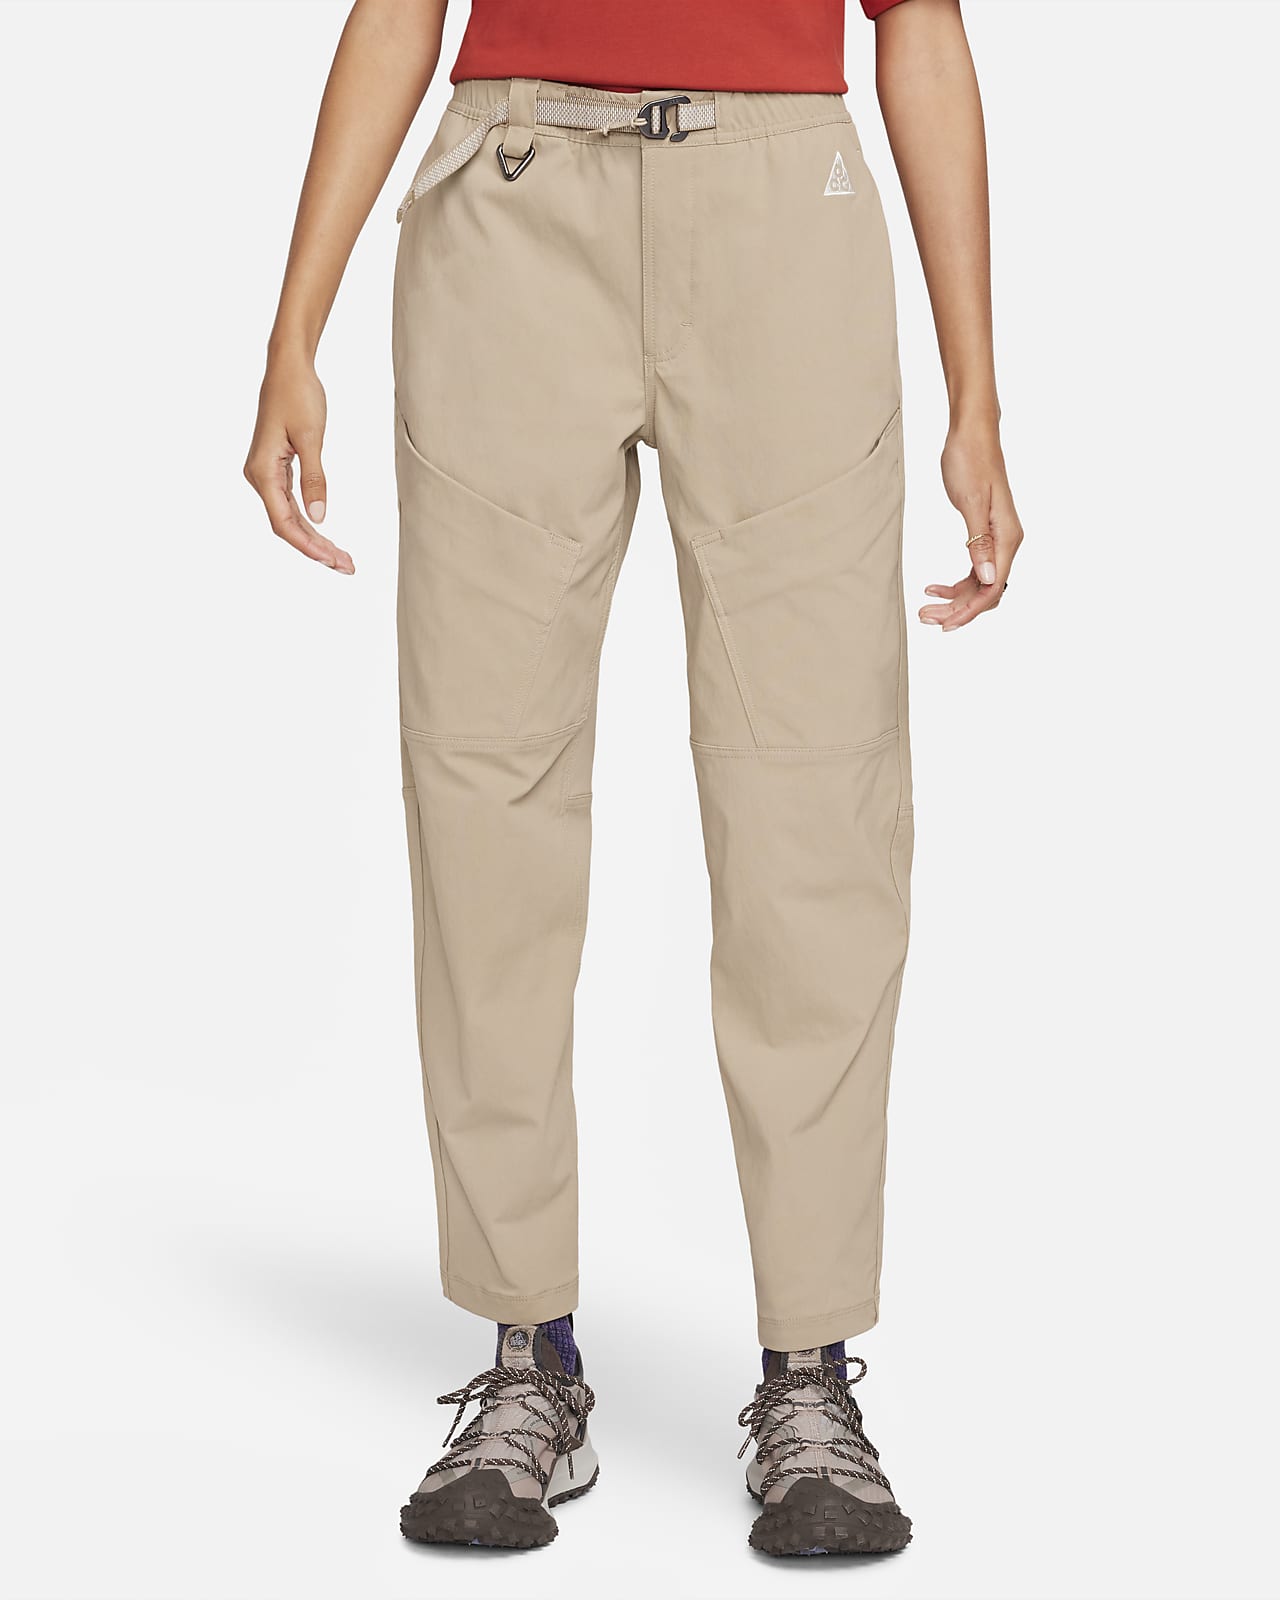 Damskie spodnie trekkingowe ze średnim stanem Nike ACG